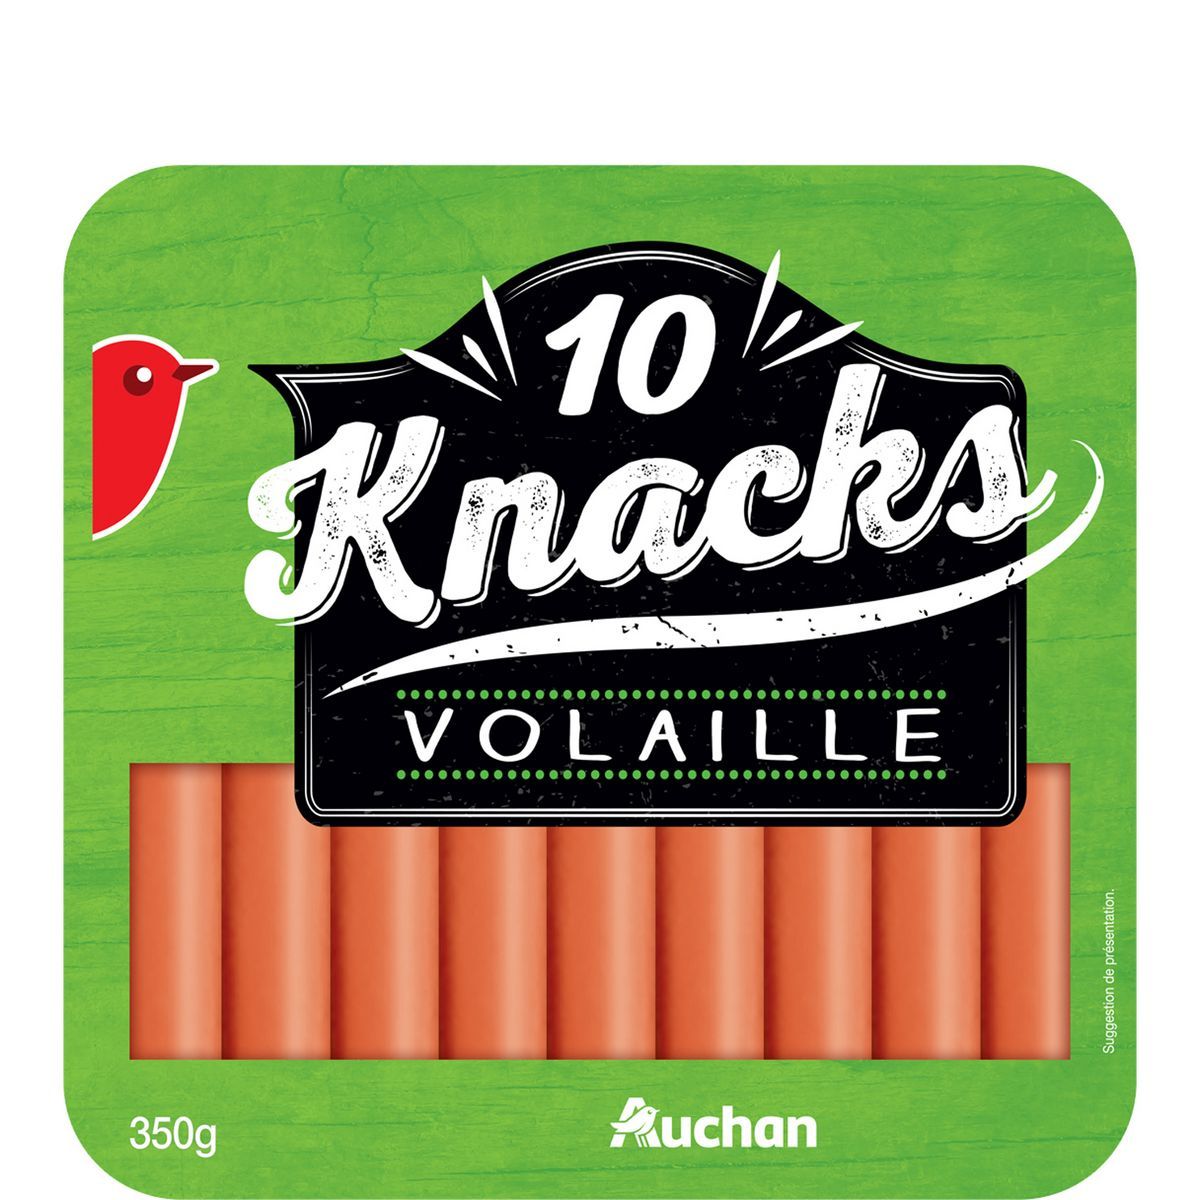 KNACKS DE VOLAILLE AUCHAN